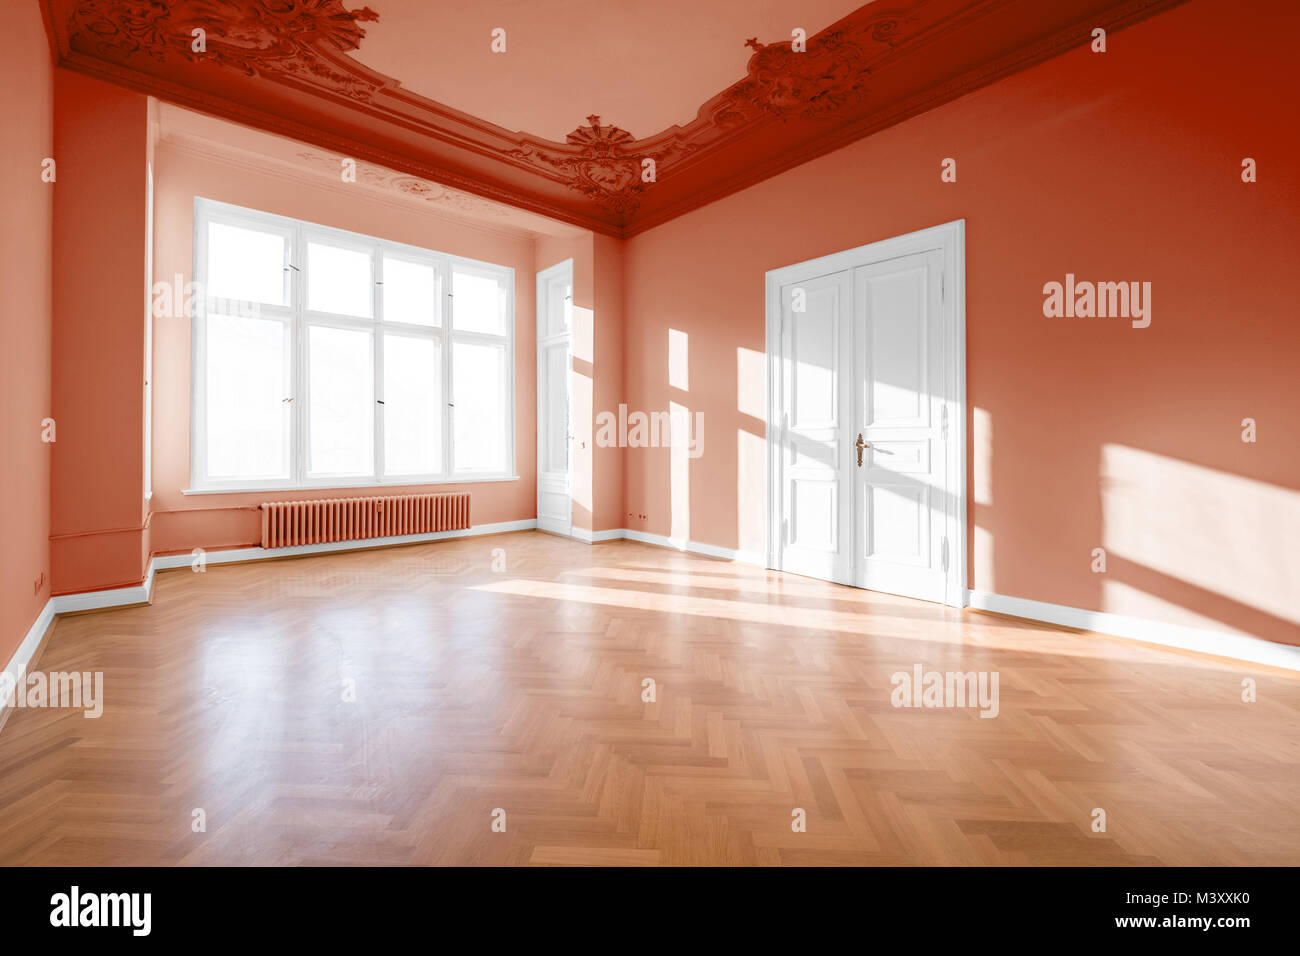 Leere Zimmer im klassischen restaurierte Gebäude - Immobilien innen Stockfoto